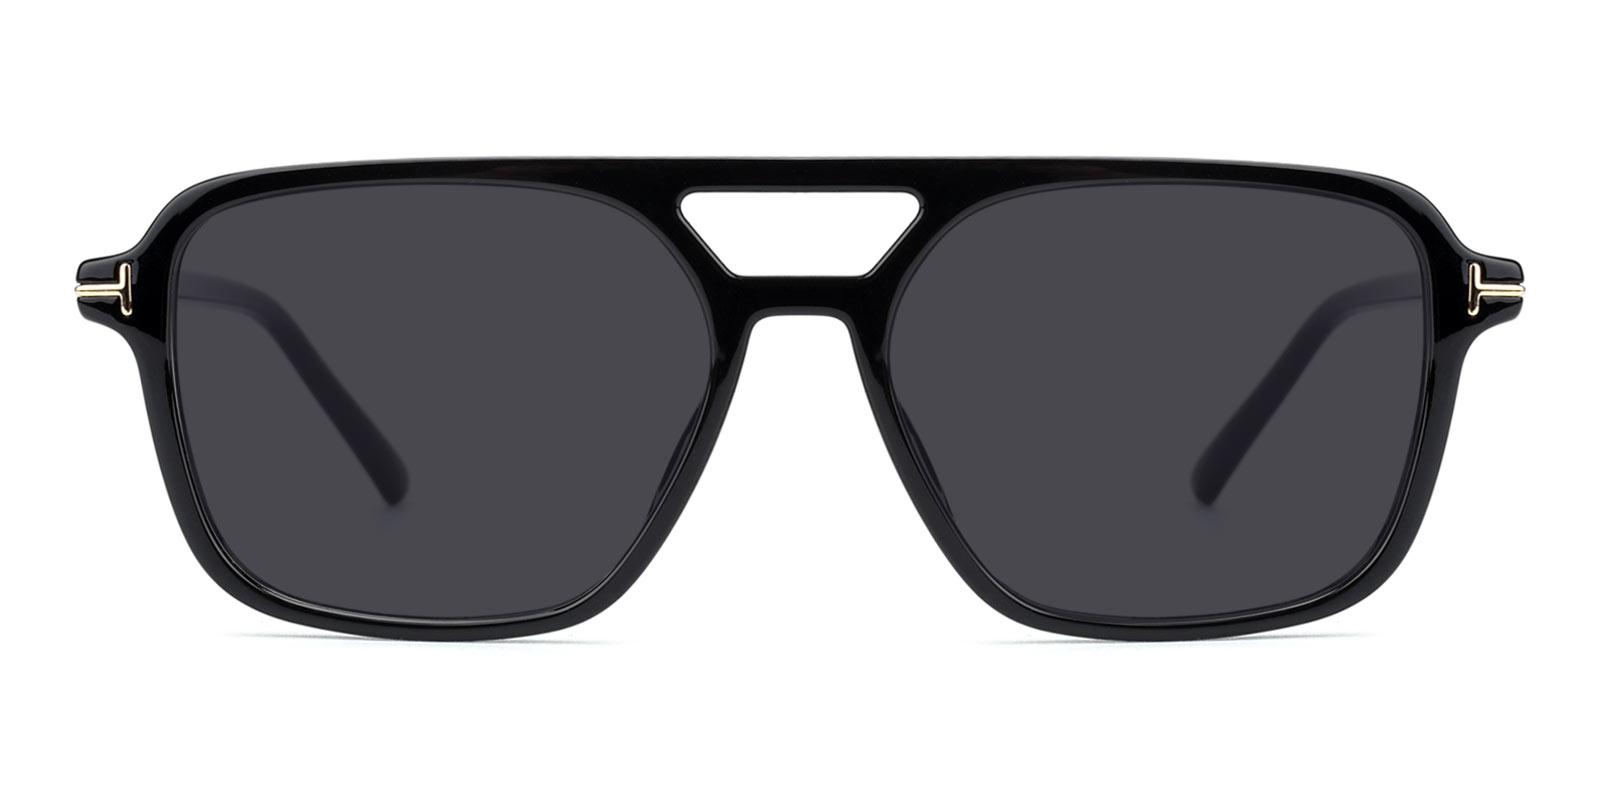 Galaxy Non Prescription Sunglasses-Black-Aviator-TR-Sunglasses-detail